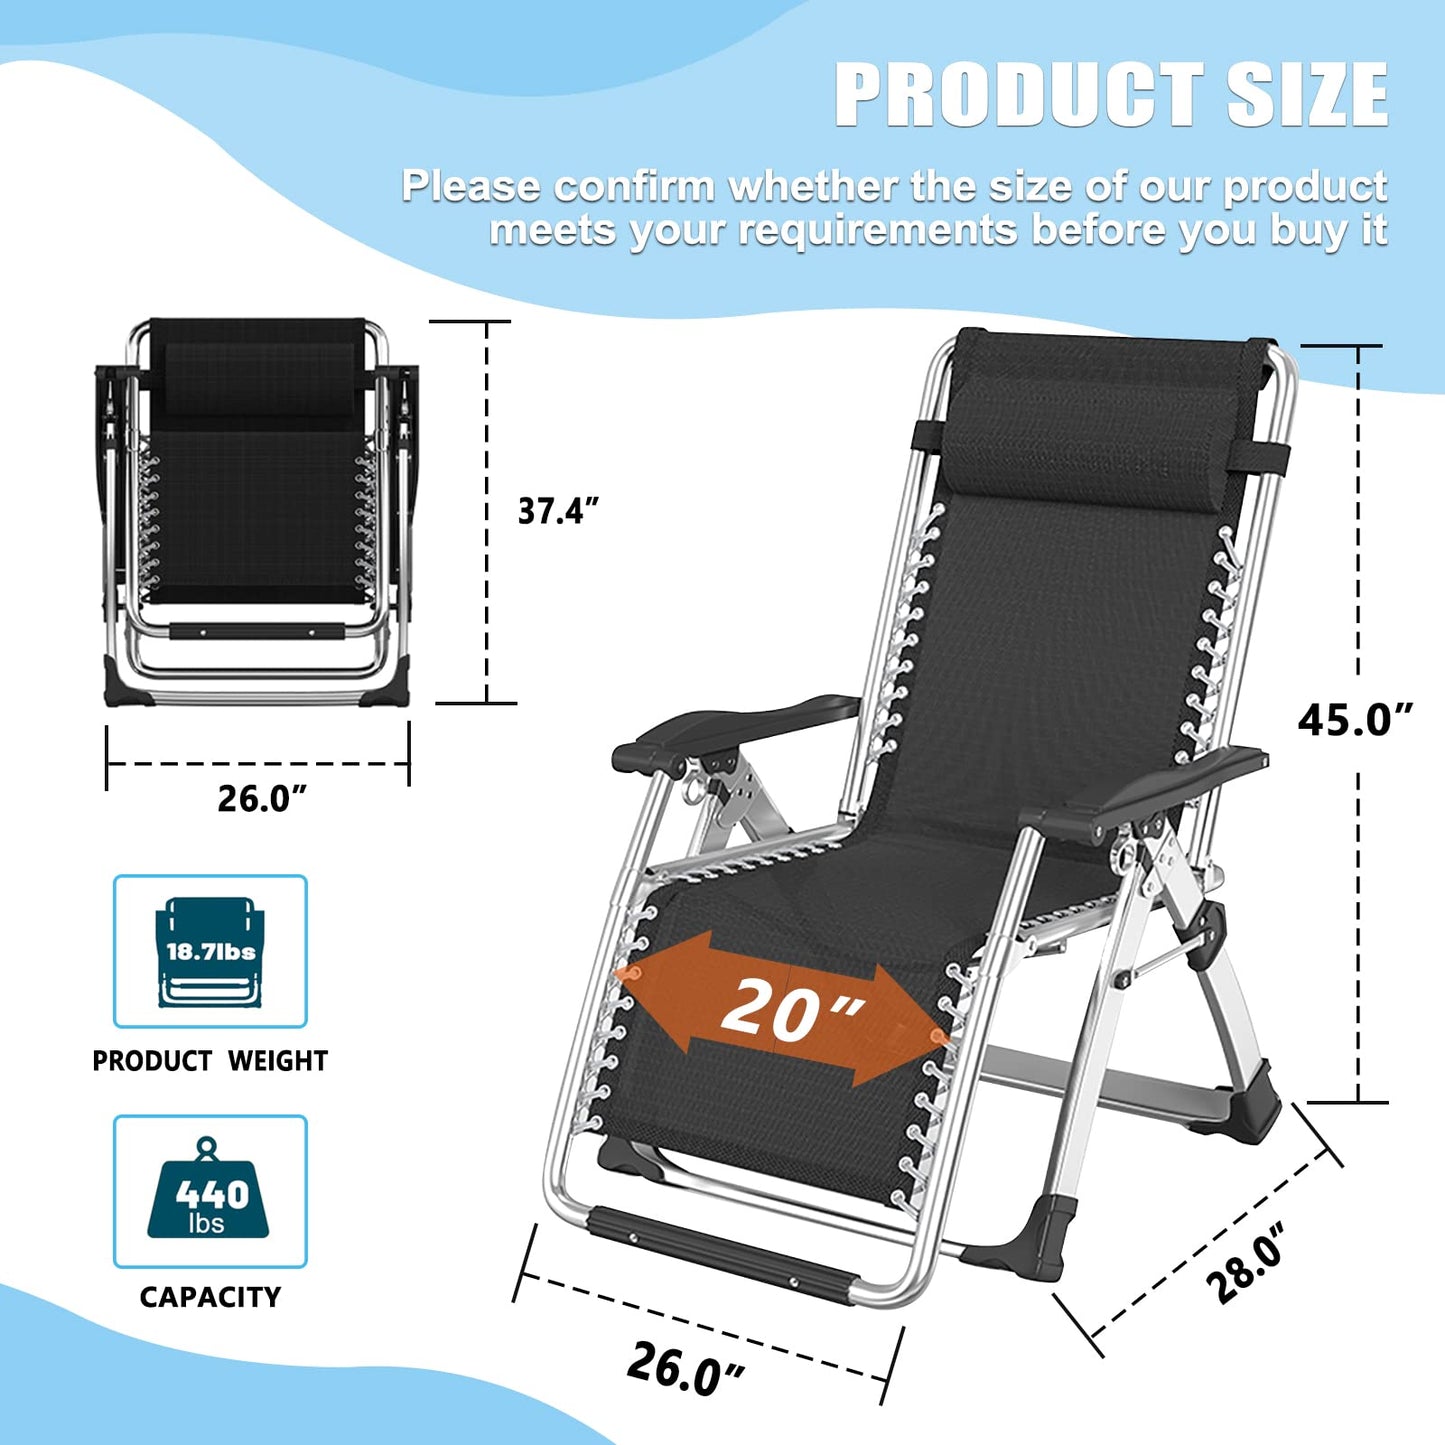 Chaise Zero Gravity, inclinable de pelouse, chaise longue de patio inclinable, chaise longue portable pliante avec coussin doux détachable, porte-gobelet, chaise d'appui-tête avec coussin chaise Zero Gravity